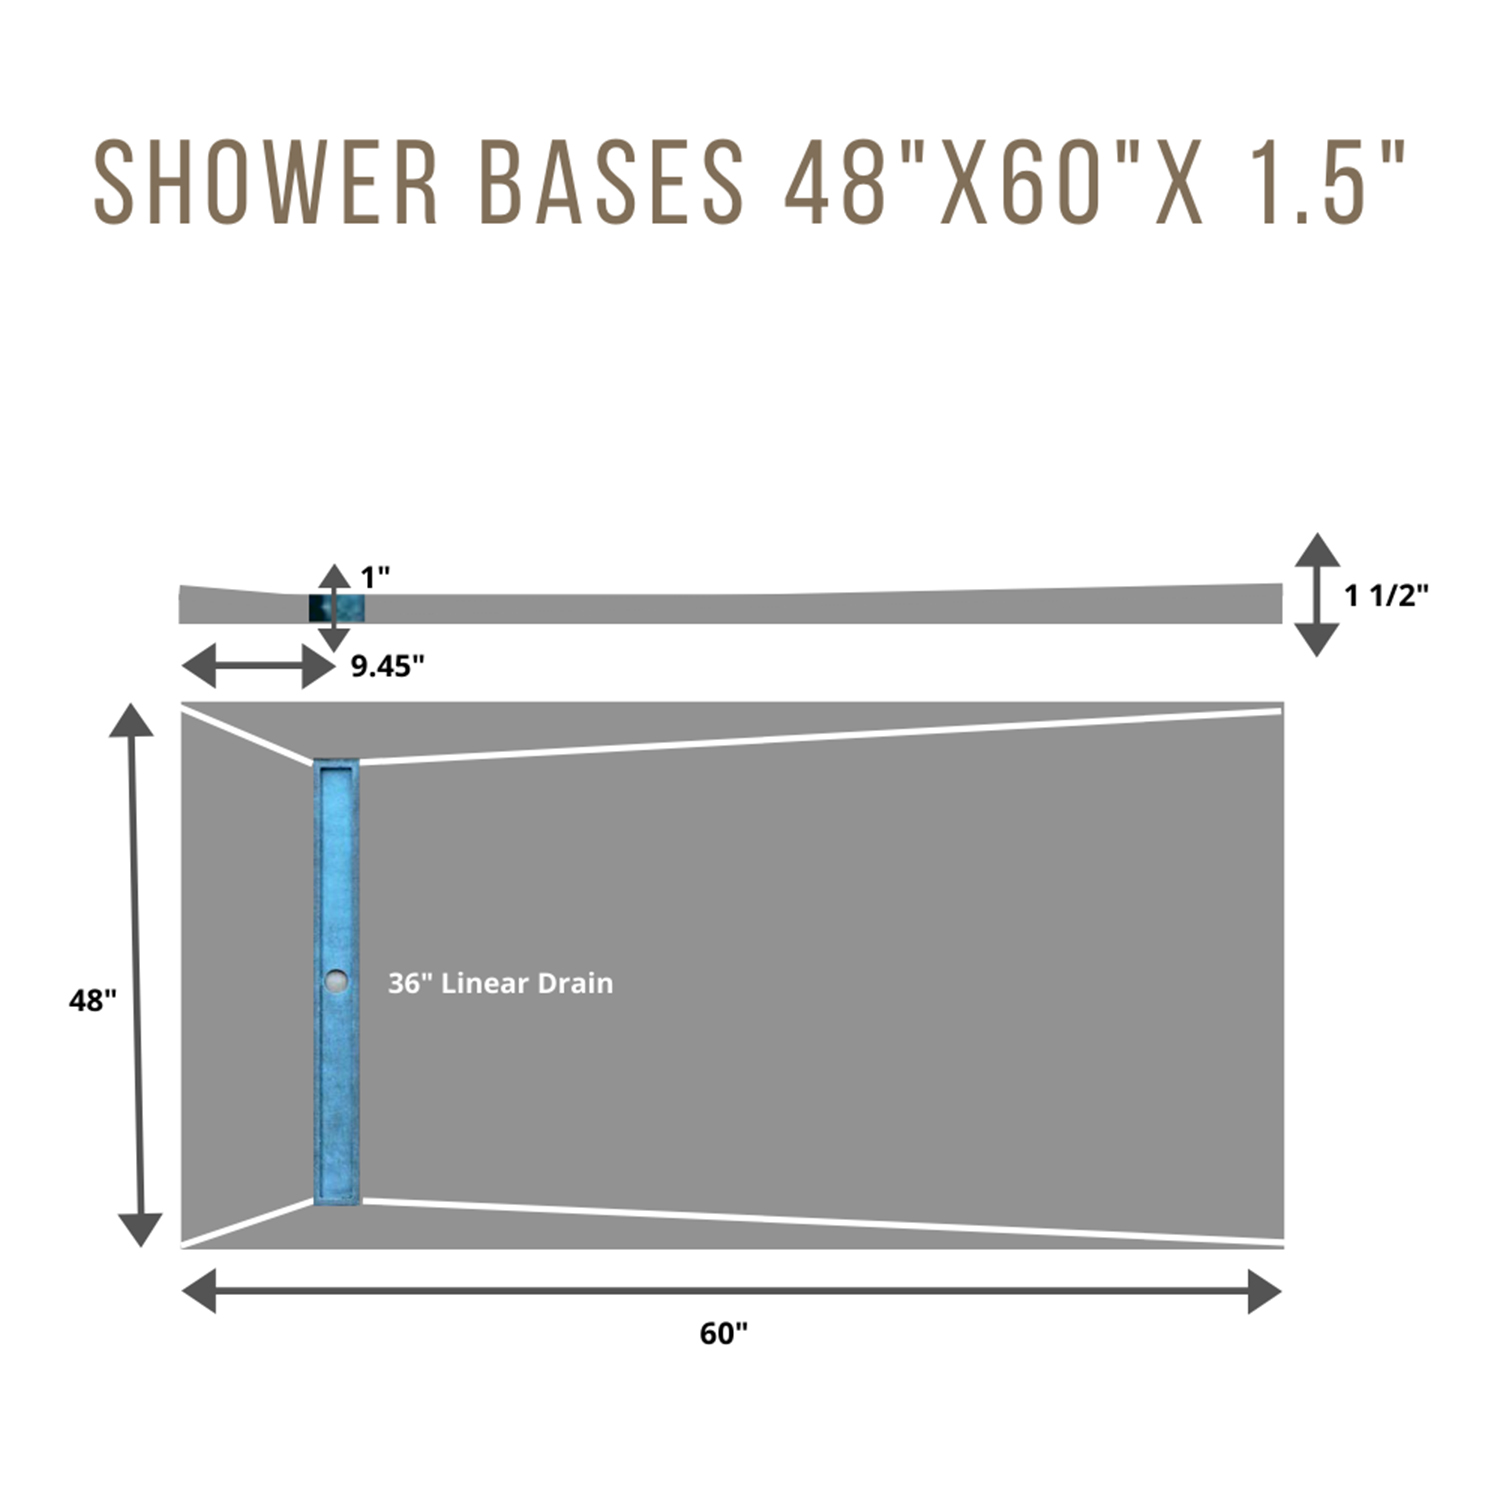 Shower Base 4x5 SIDE 36